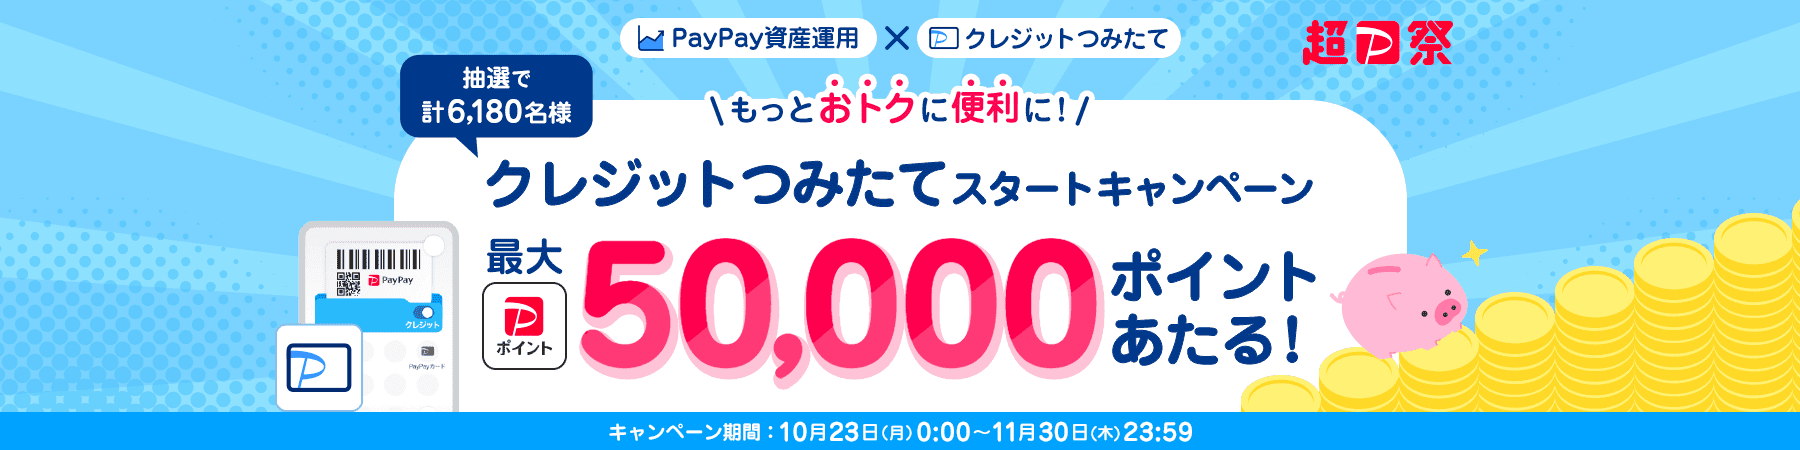 超PayPay祭 PayPay資産運用×クレジットつみたて もっとおトクに便利に！クレジットつみたてスタートキャンペーン 抽選で計6,180名様に最大PayPayポイント50,000ポイントあたる！ キャンペーン期間：10月23日(月)0:00〜11月30日(木)23:59